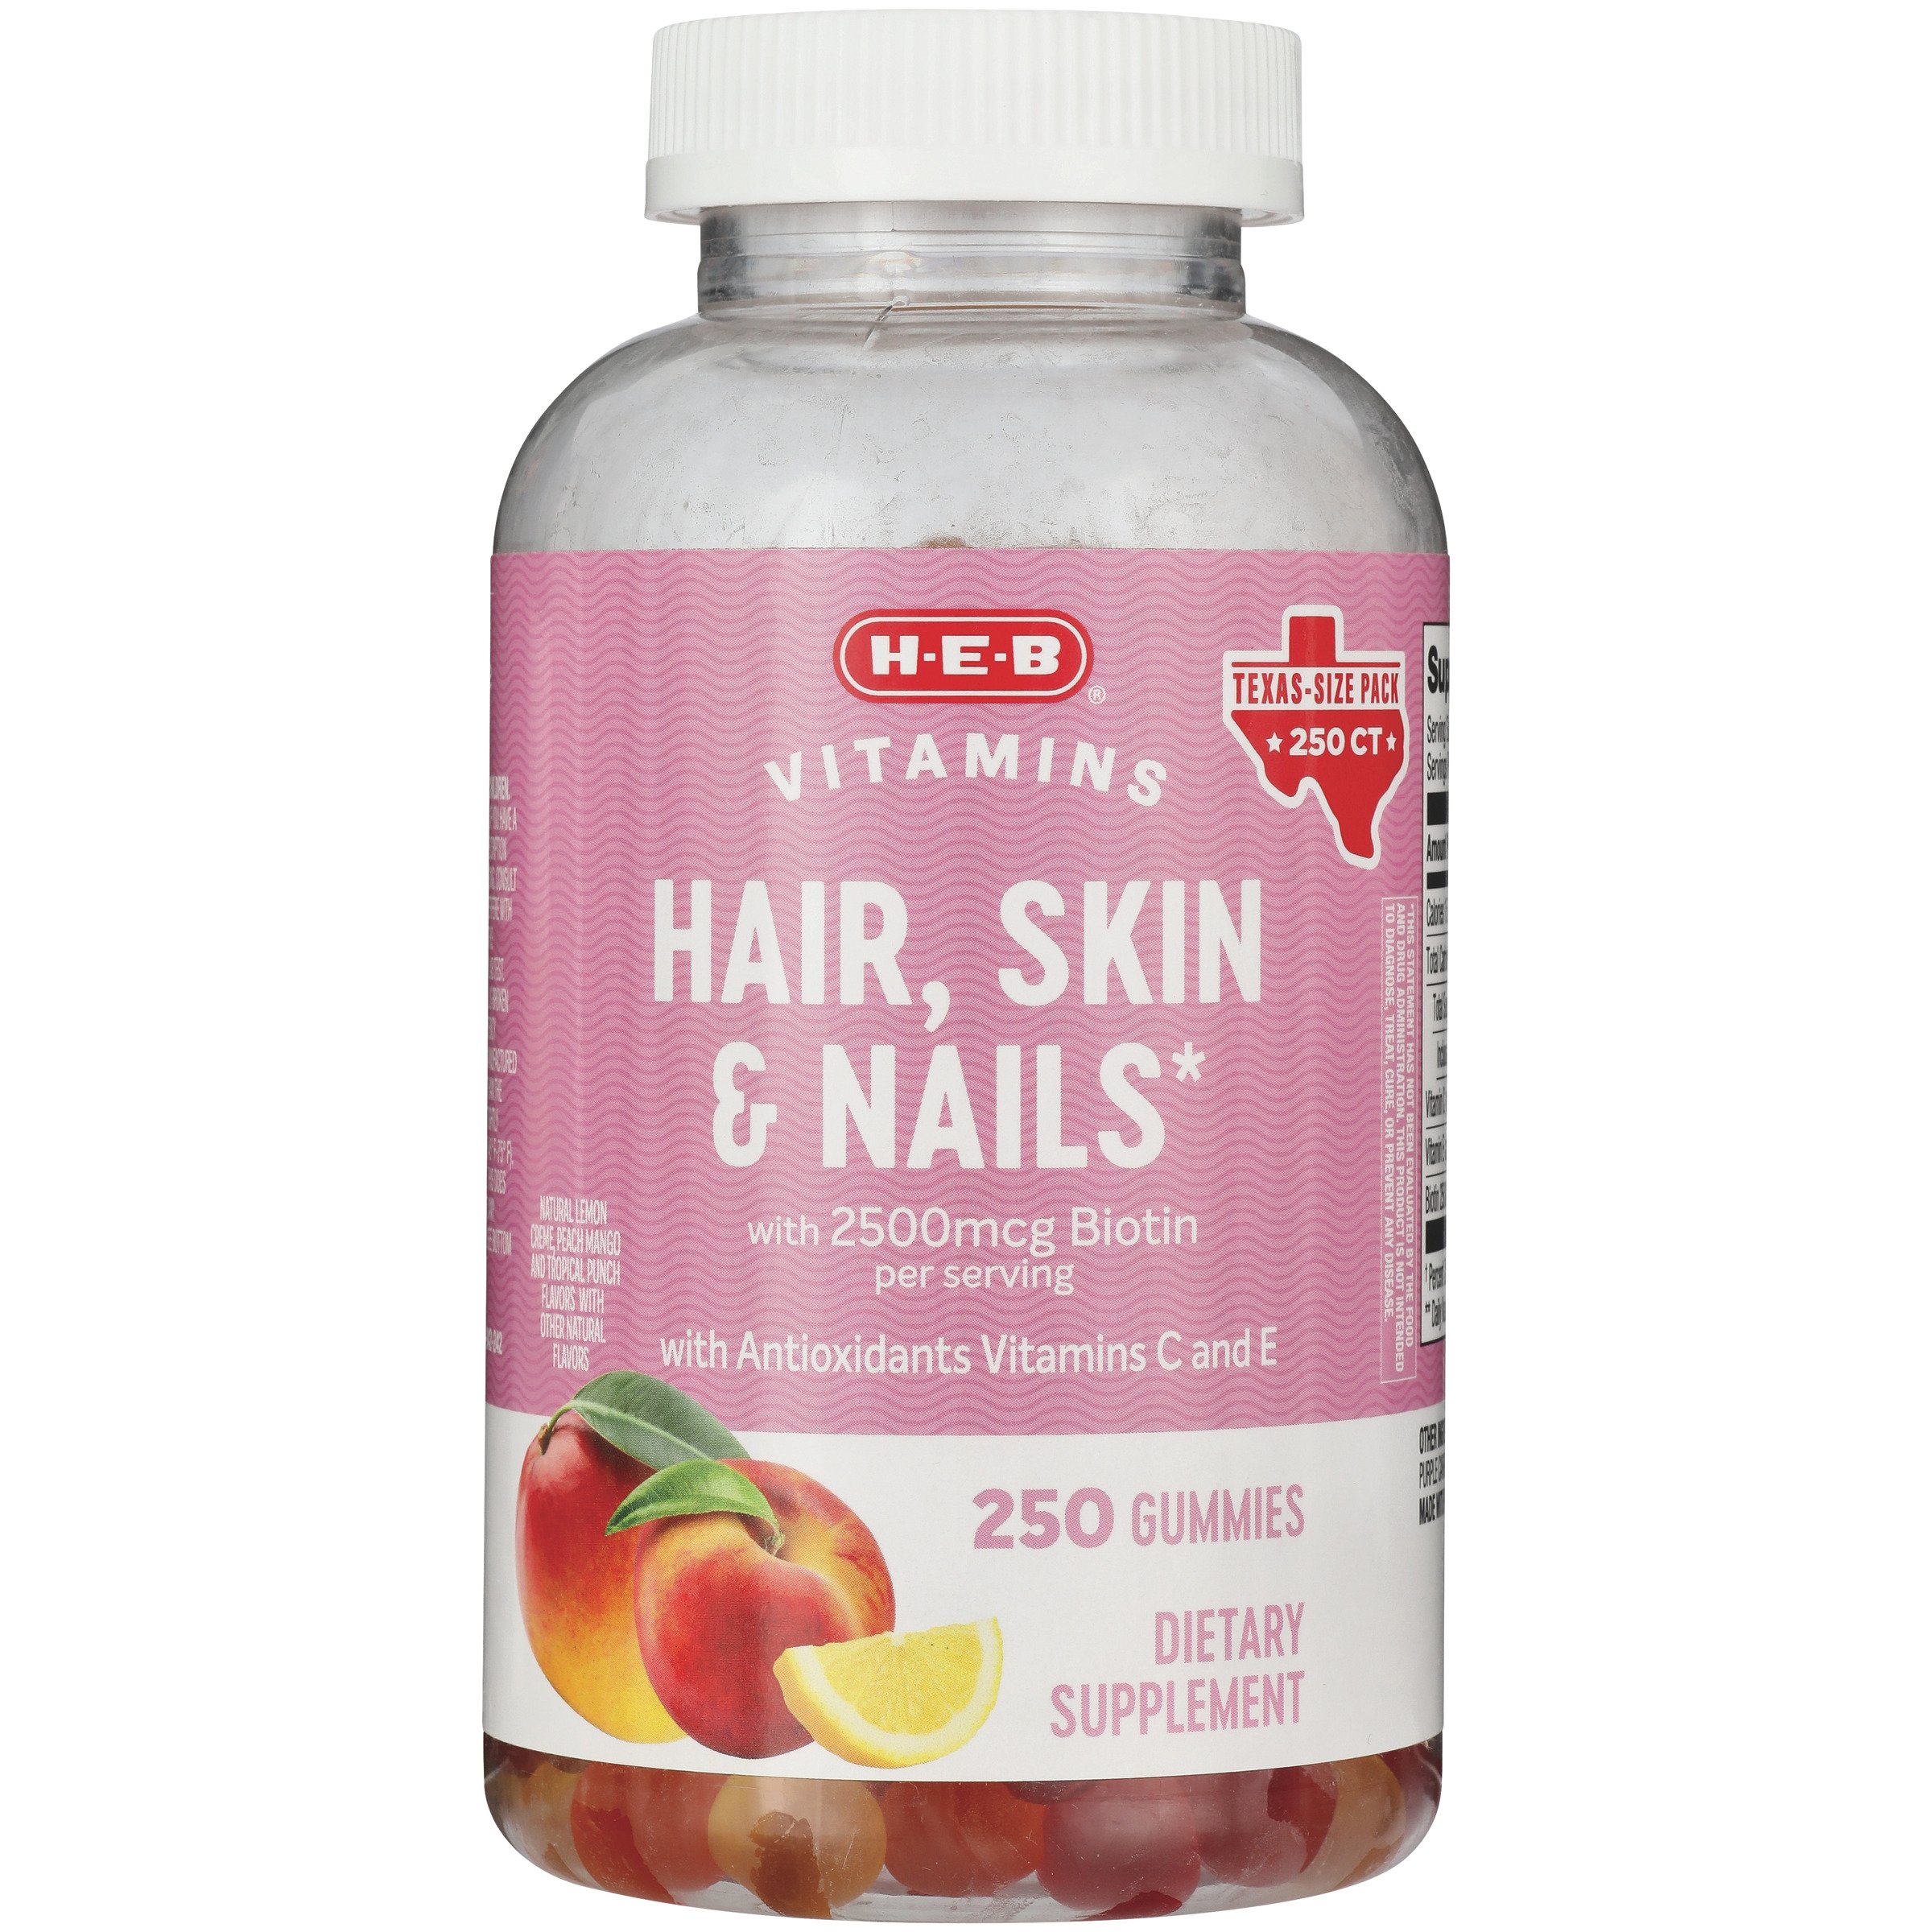 H-E-B Vitamins Hair Skin & Nails Gummies - Shop Multivitamins at H-E-B